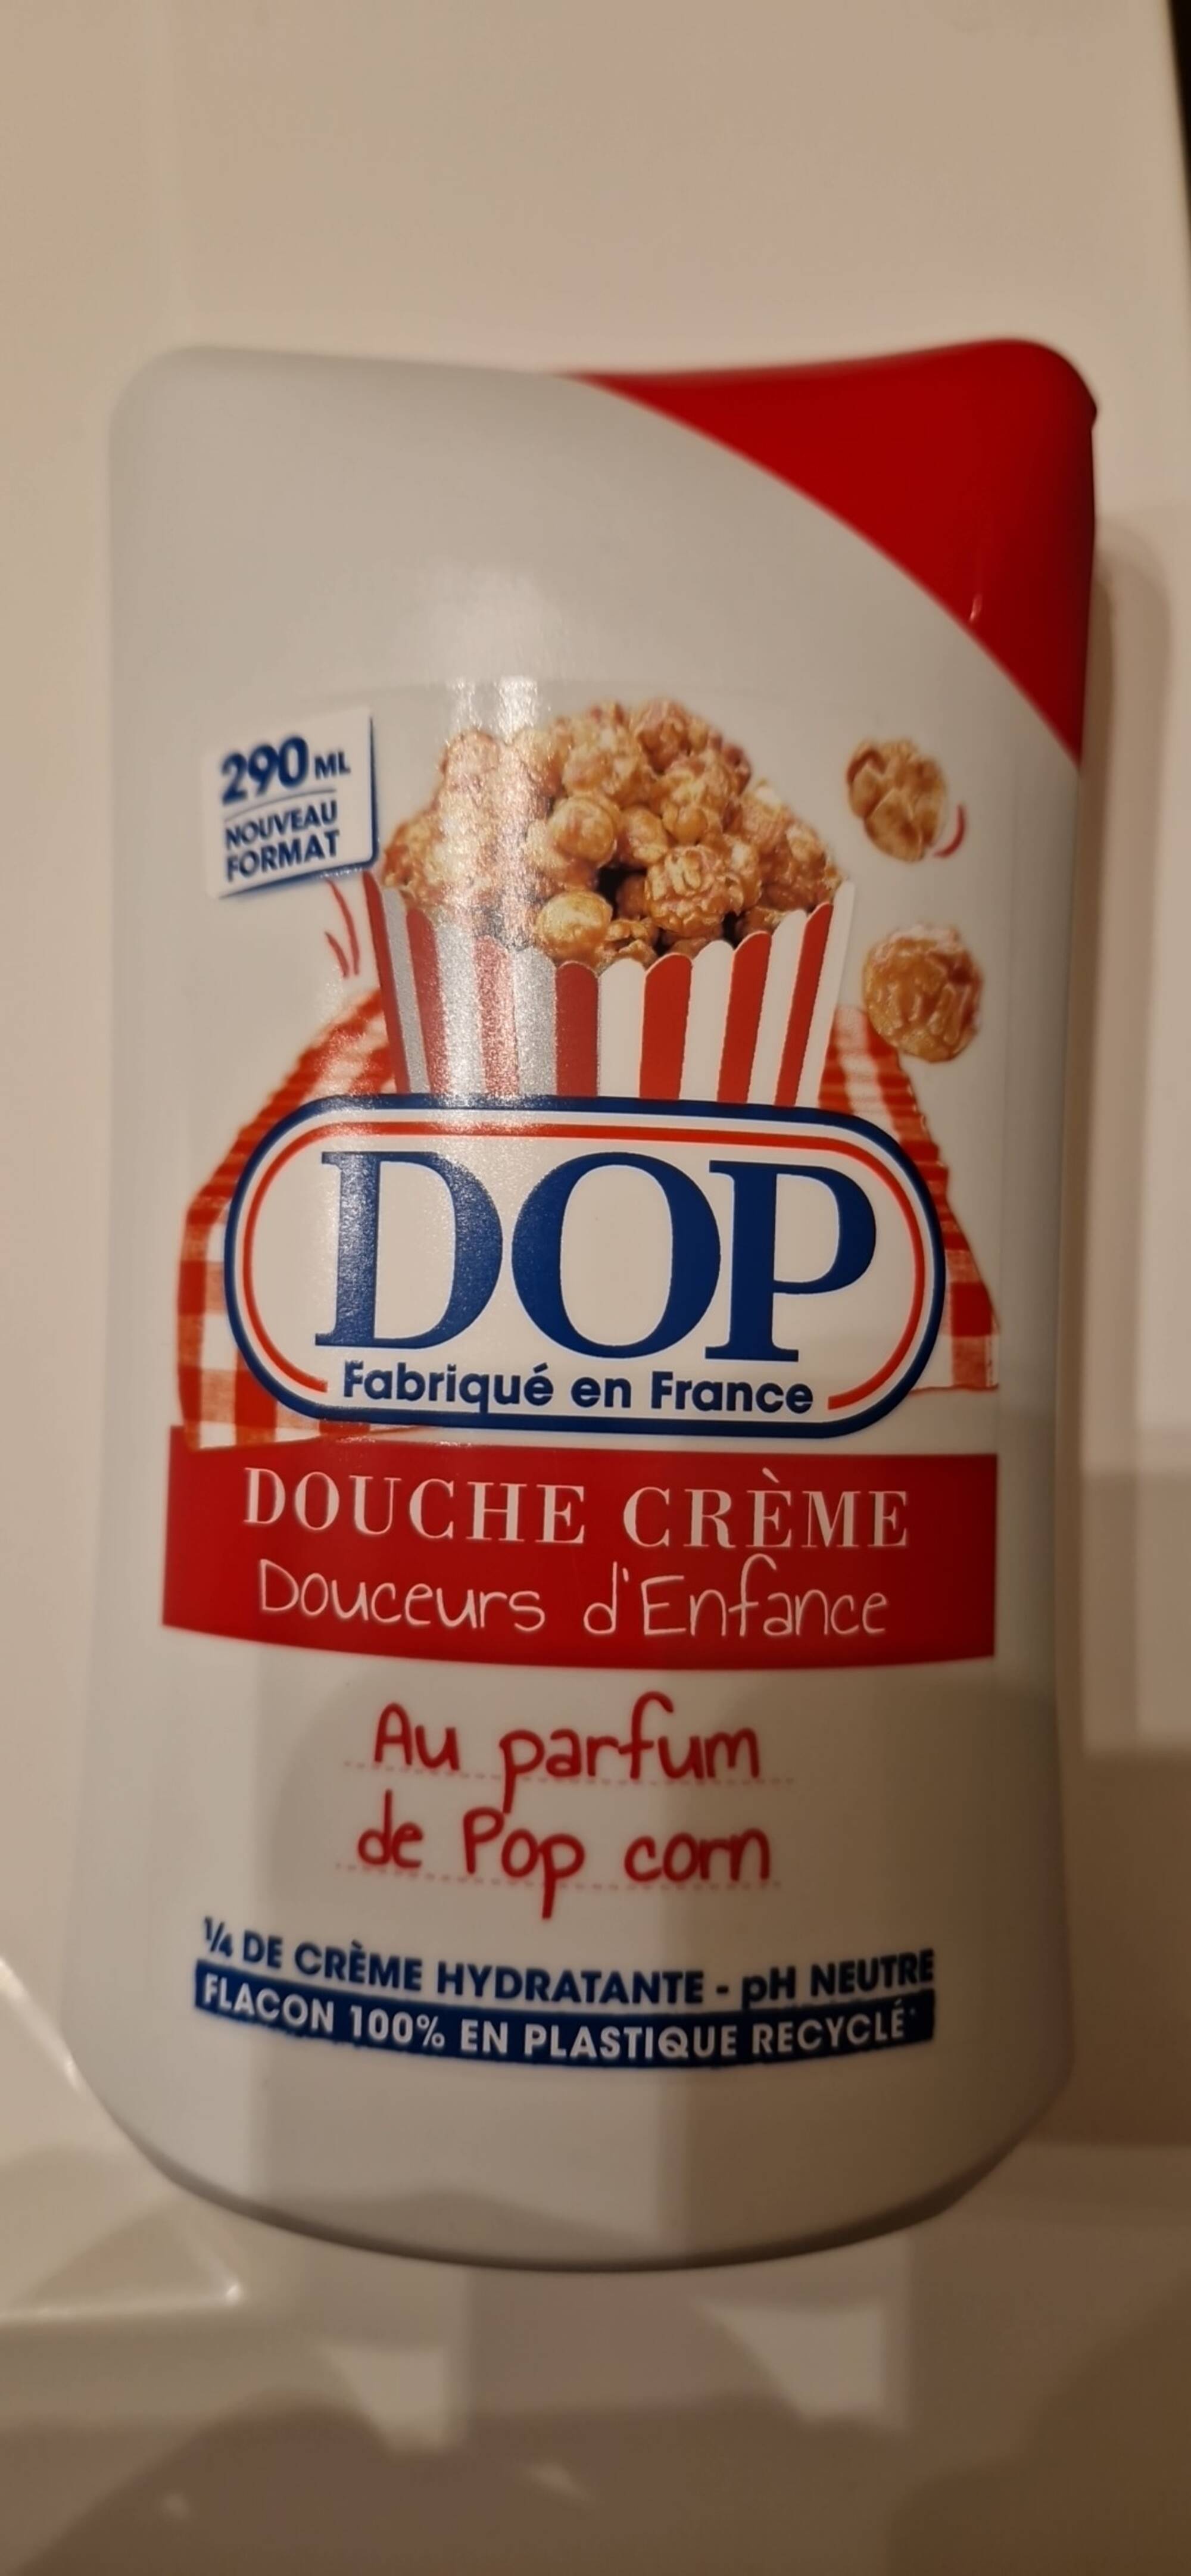 DOP - Douceurs d'enfance - Douche crème au parfum de pop corn